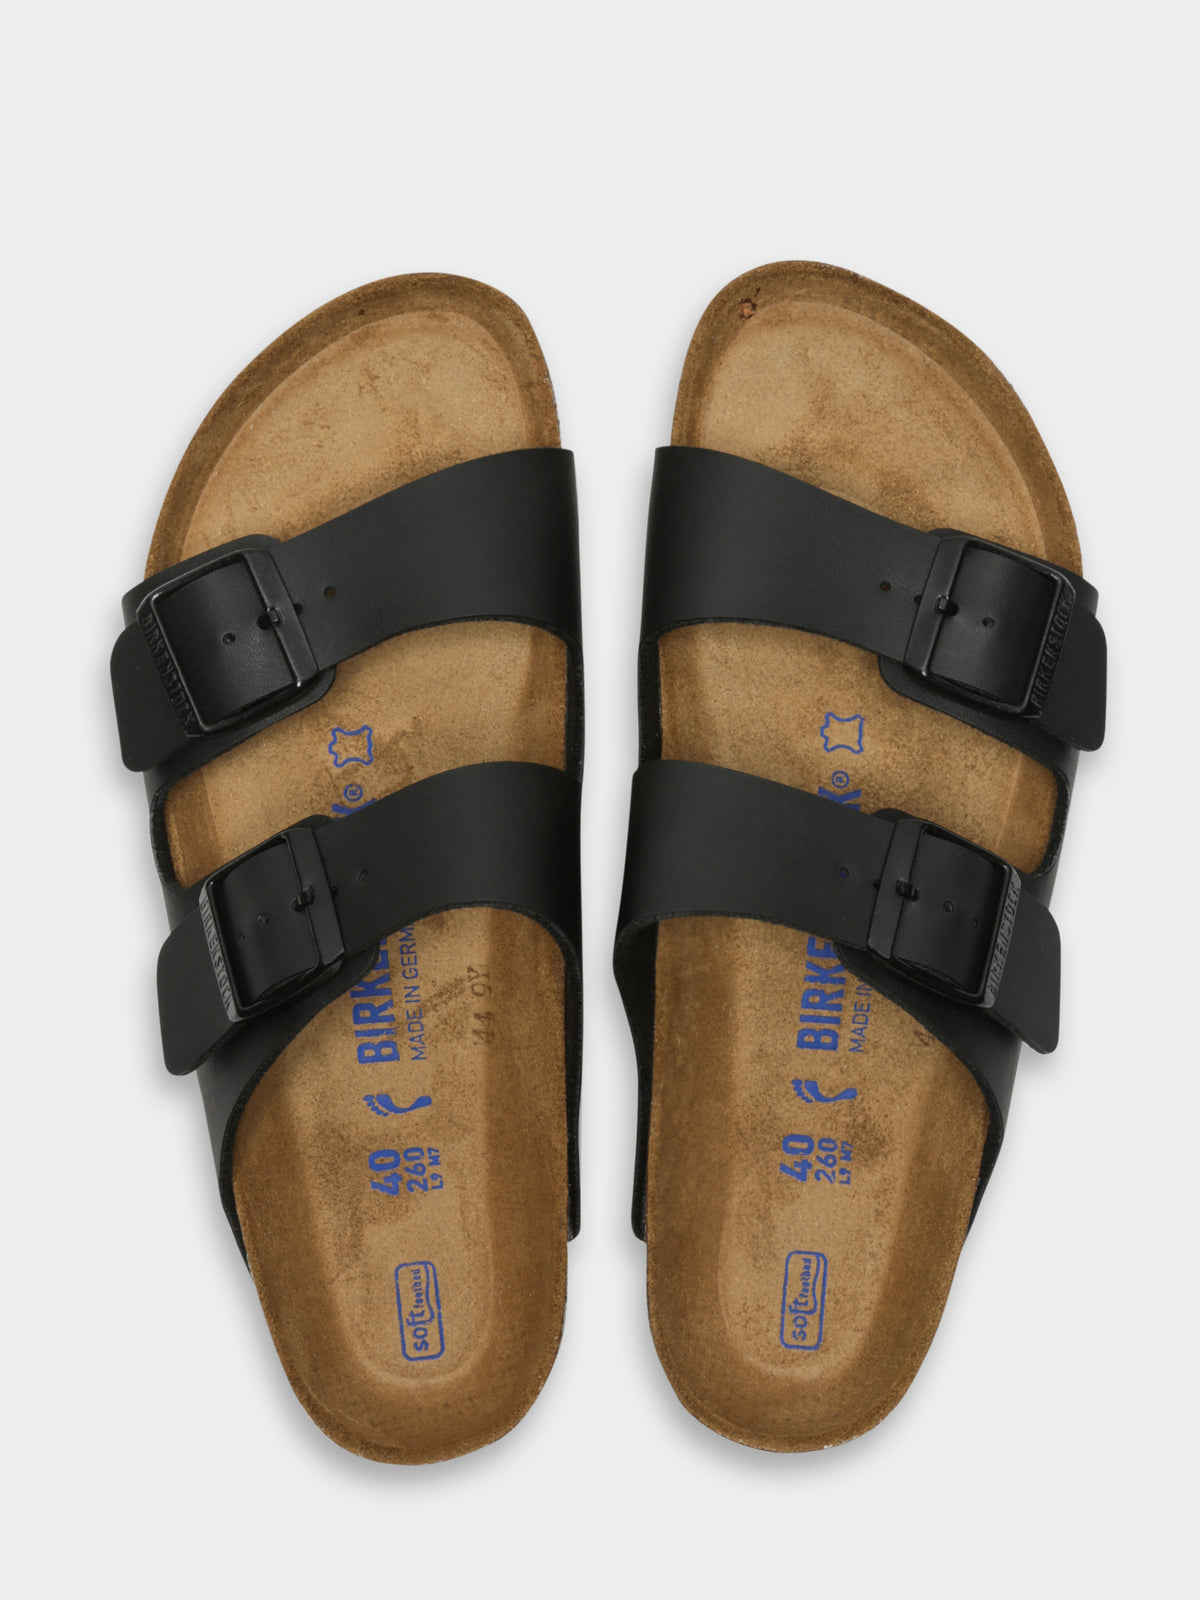 Unisex Arizona Two-Strap Soft Footbed Sandals in Black Birko-Flor